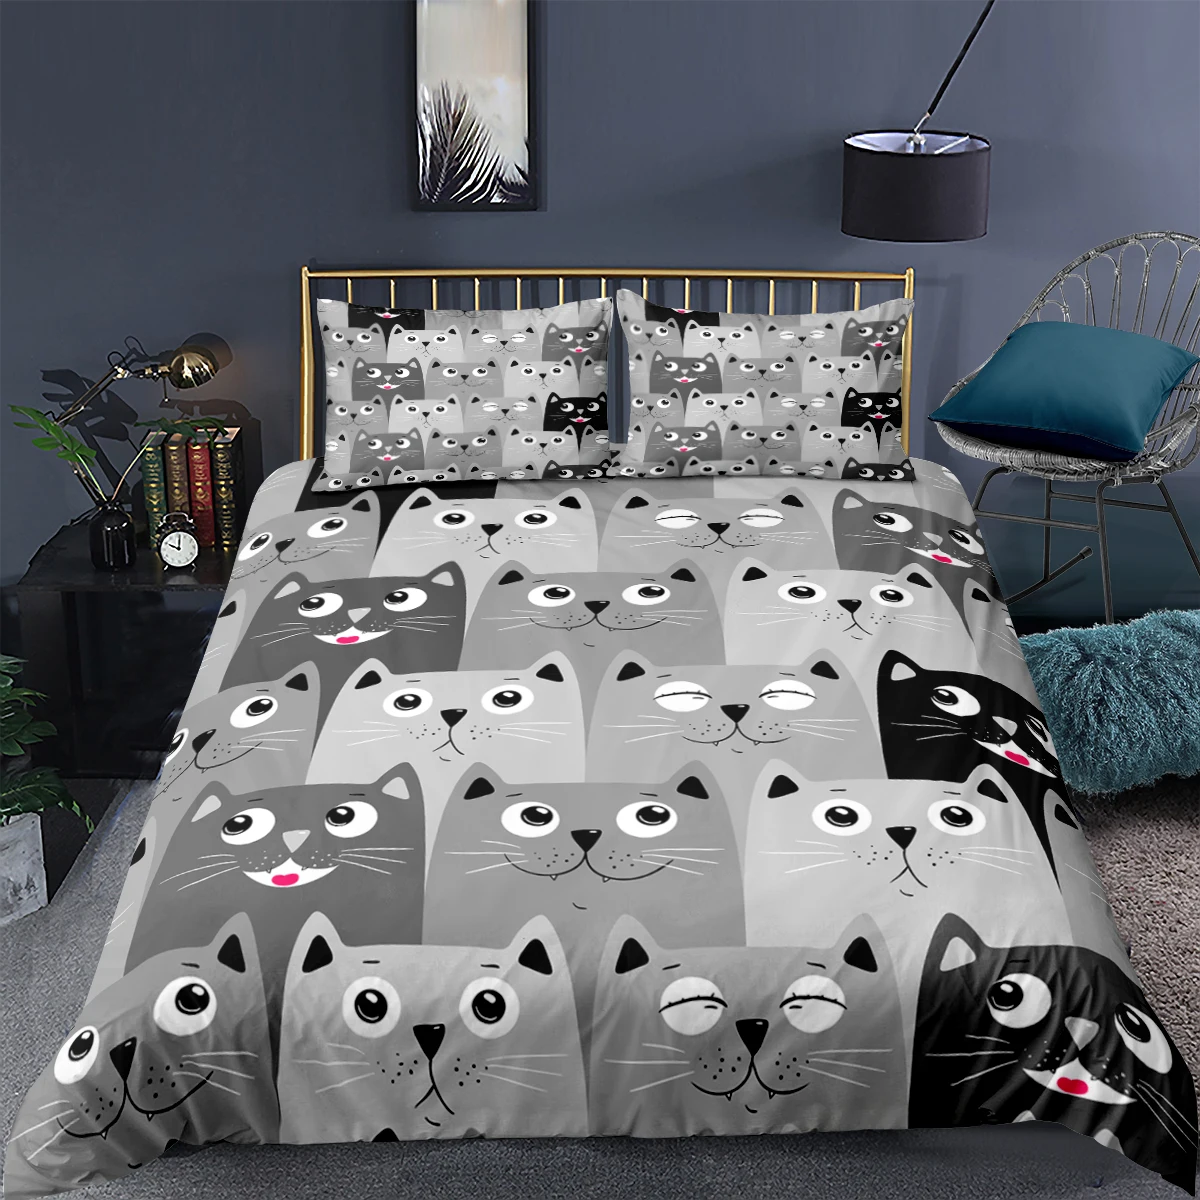 

3D Cartoon Bettwäsche Set Grau Katze Gedruckt Bettbezug-set Weiche Quilt Abdeckung Für Kinder Junge Mädchen Schlafzimmer Einzige